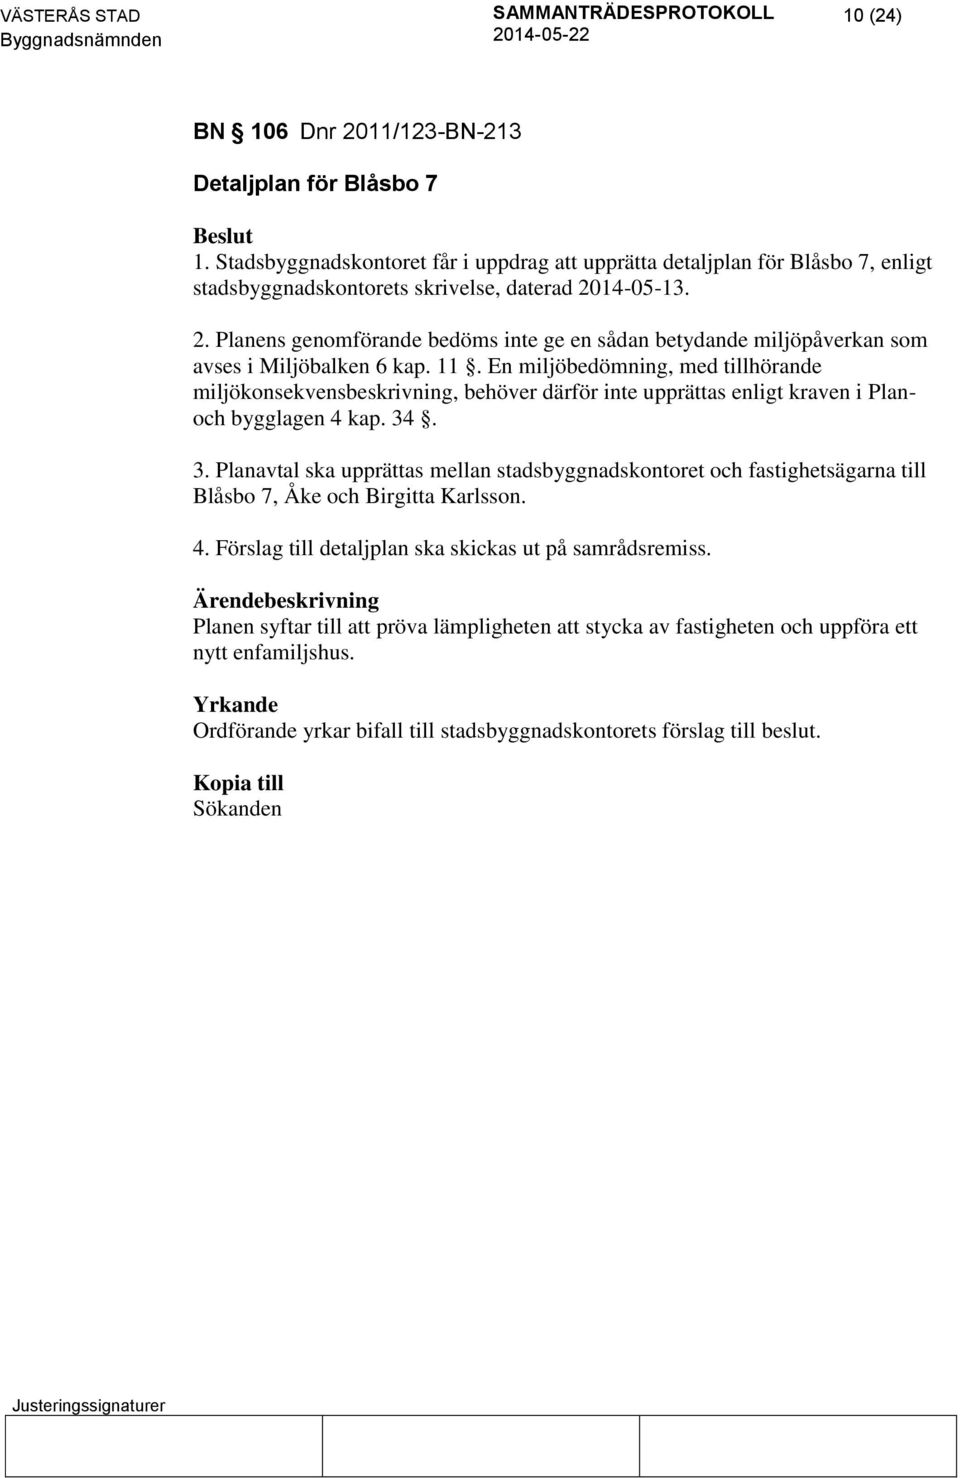 . 3. Planavtal ska upprättas mellan stadsbyggnadskontoret och fastighetsägarna till Blåsbo 7, Åke och Birgitta Karlsson. 4. Förslag till detaljplan ska skickas ut på samrådsremiss.